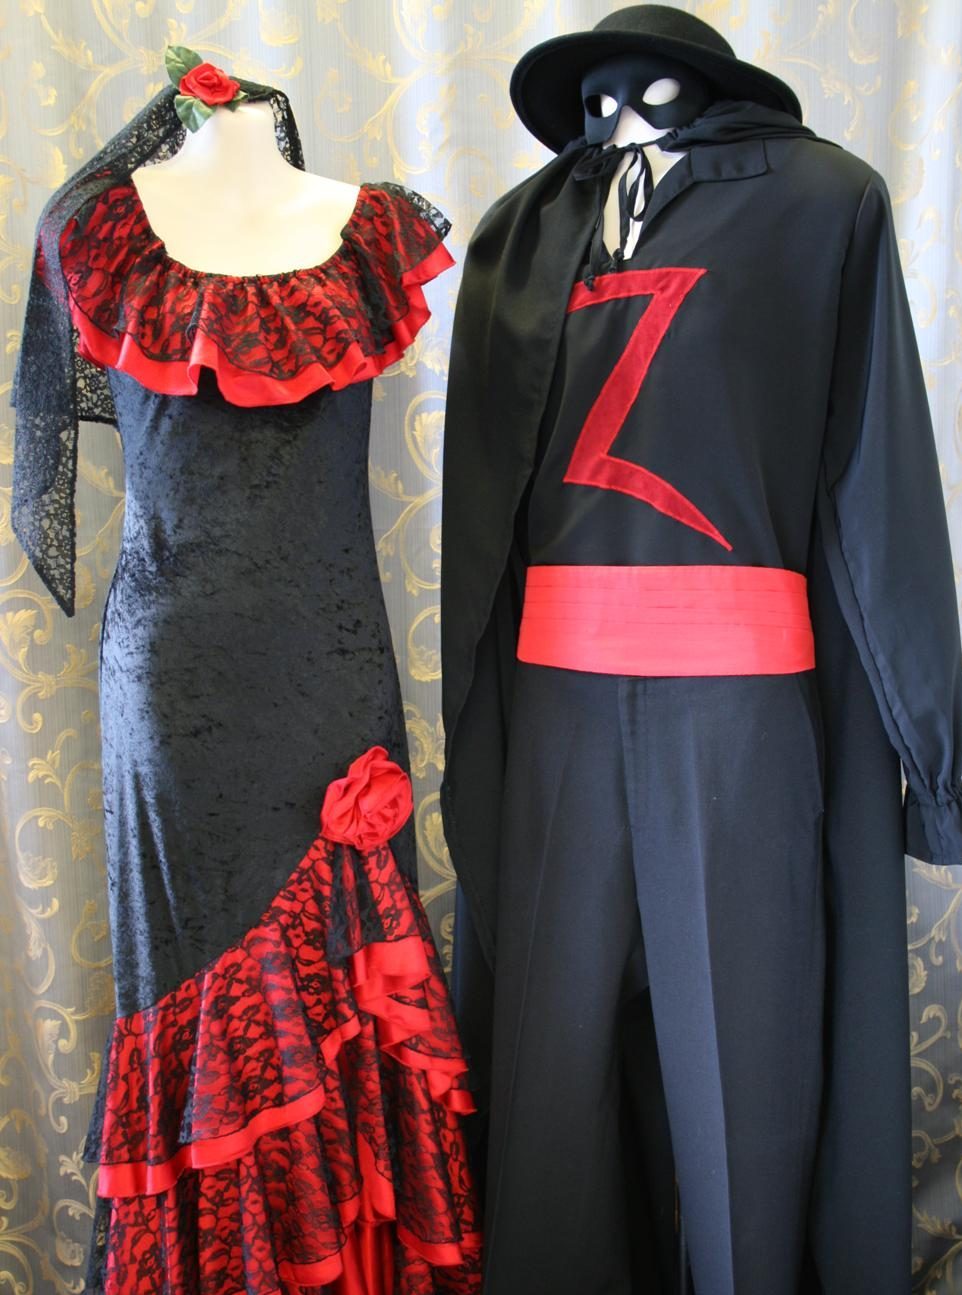 Spanish Costumes From Bullfighters And Senoritas To Zorro Acting The Part